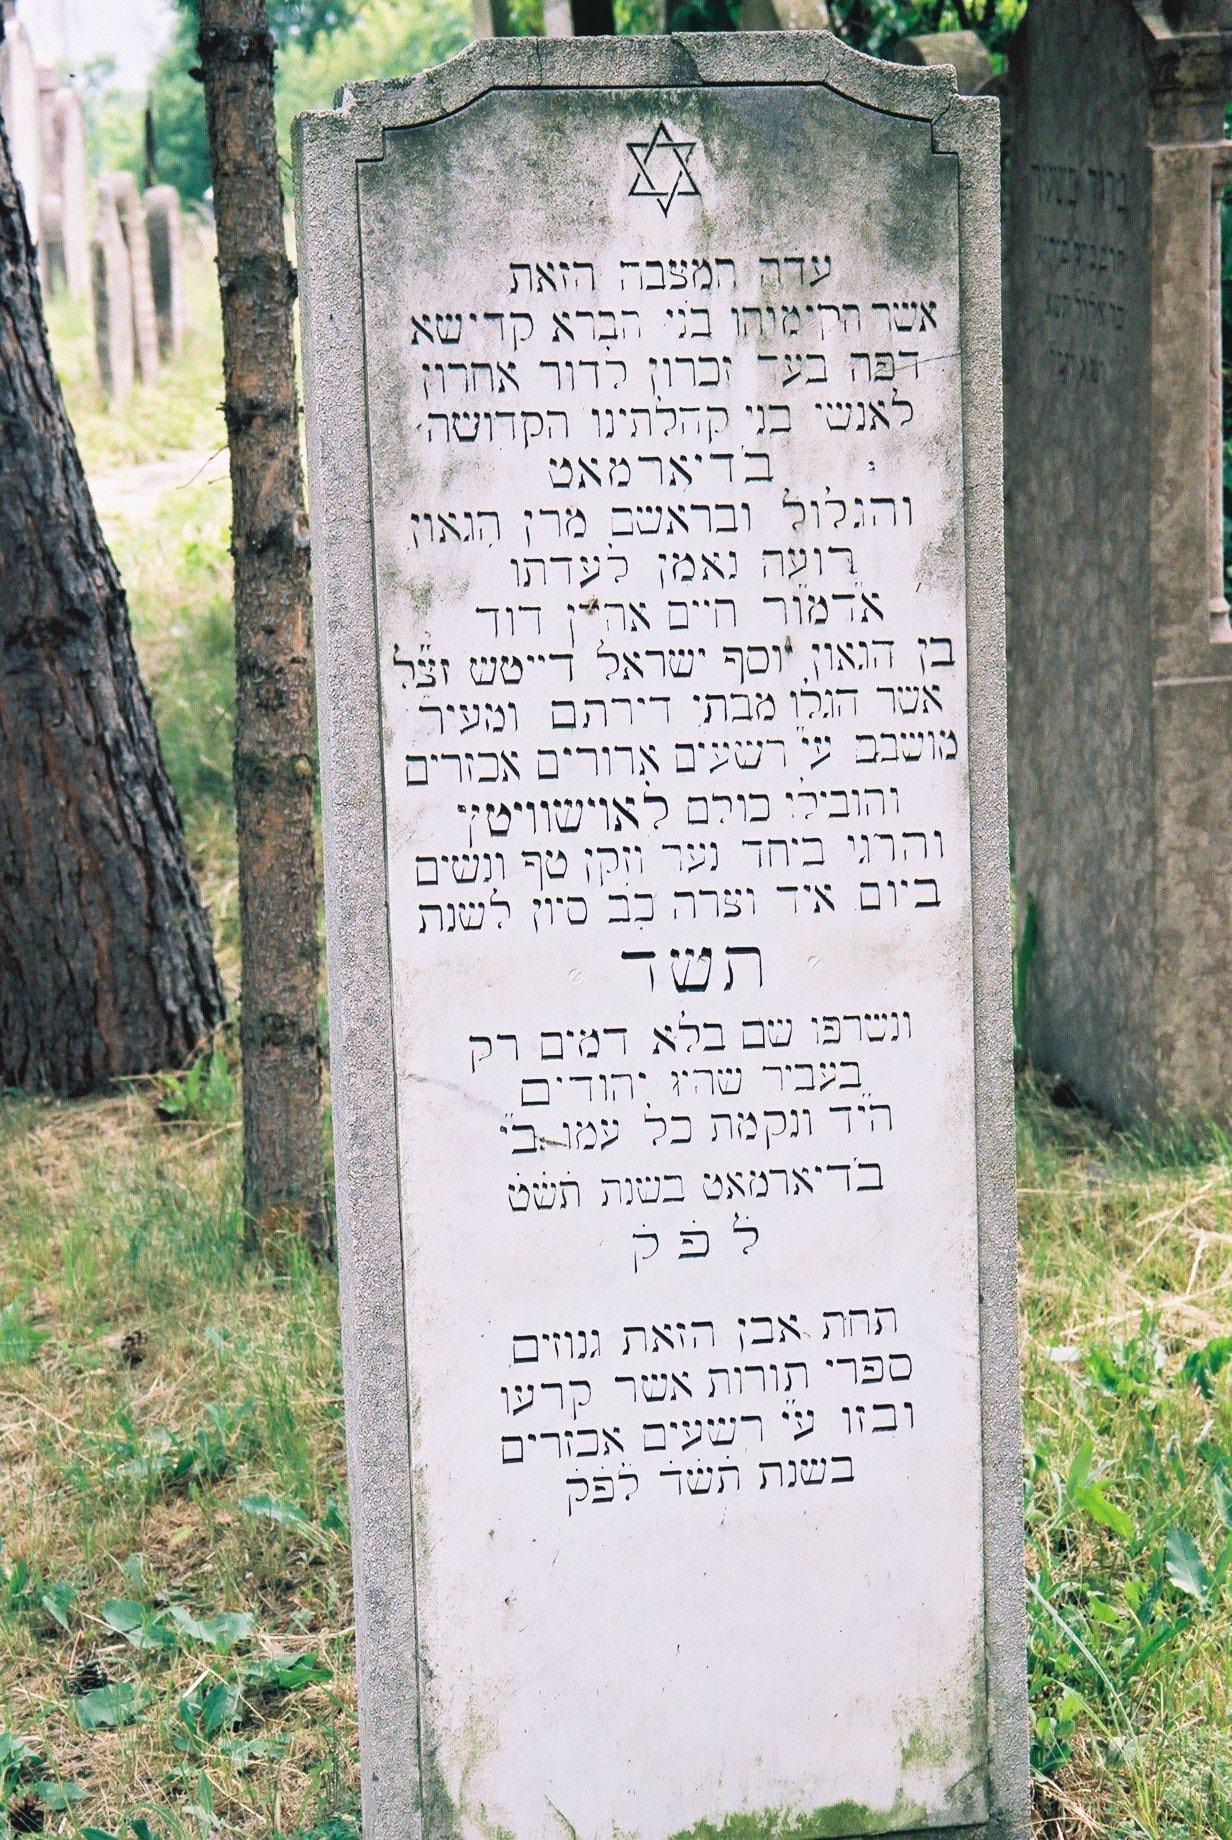 „E kő alatt vannak eltemetve azok a Tóratekercsek, amiket széttéptek és megrongáltak a kegyetlen gonoszok 5704-ben” – Ez olvasható Balassagyar- maton a Tórák nyughelye fölé 1949-ben emelt sírkövön, ami egyben a Holokauszt mártírjainak is emléket állít. Forrás: Berish Weber